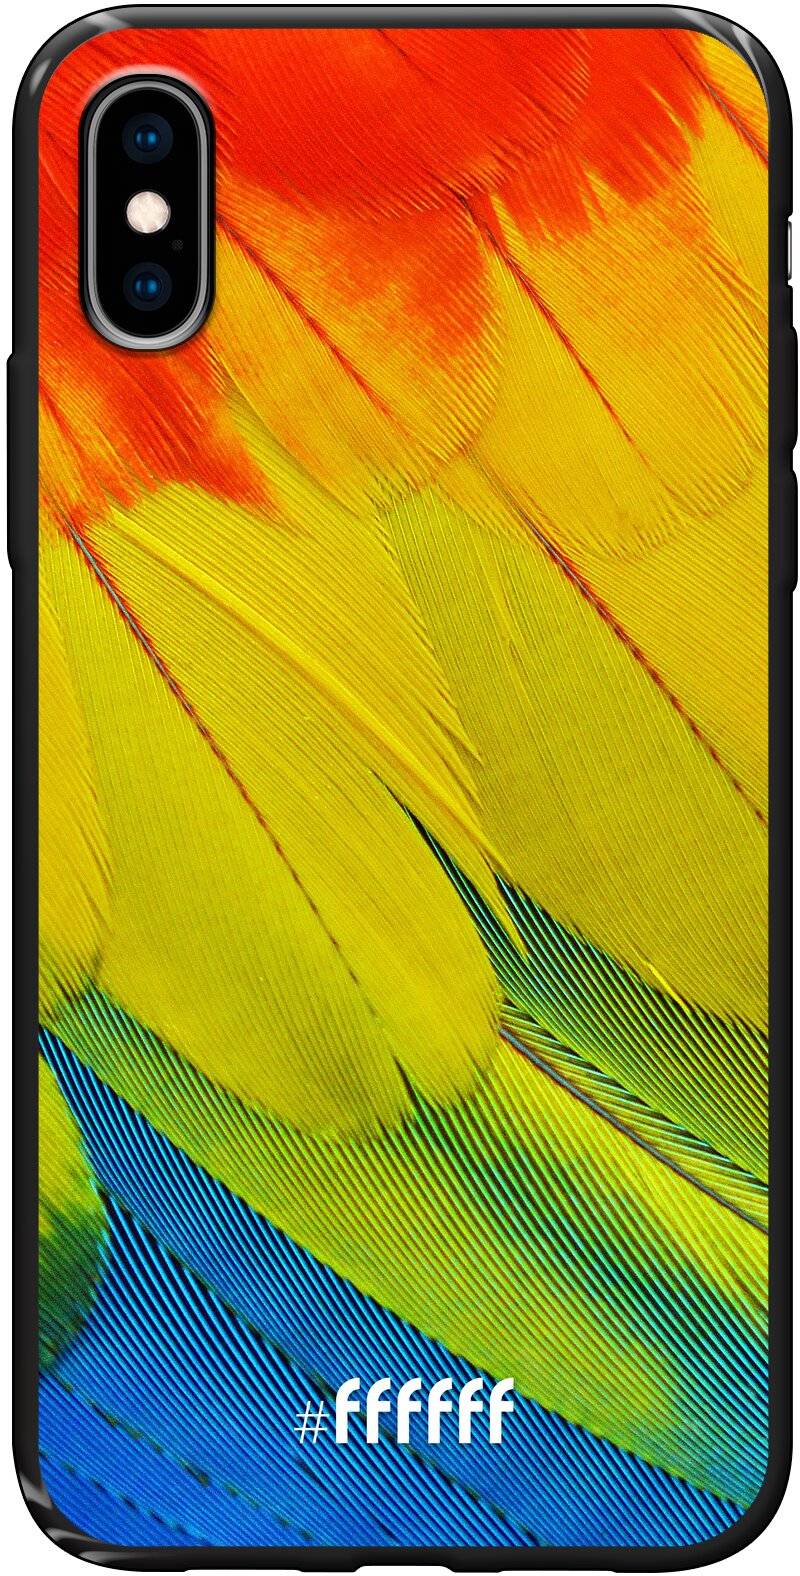 Macaw Hues iPhone Xs